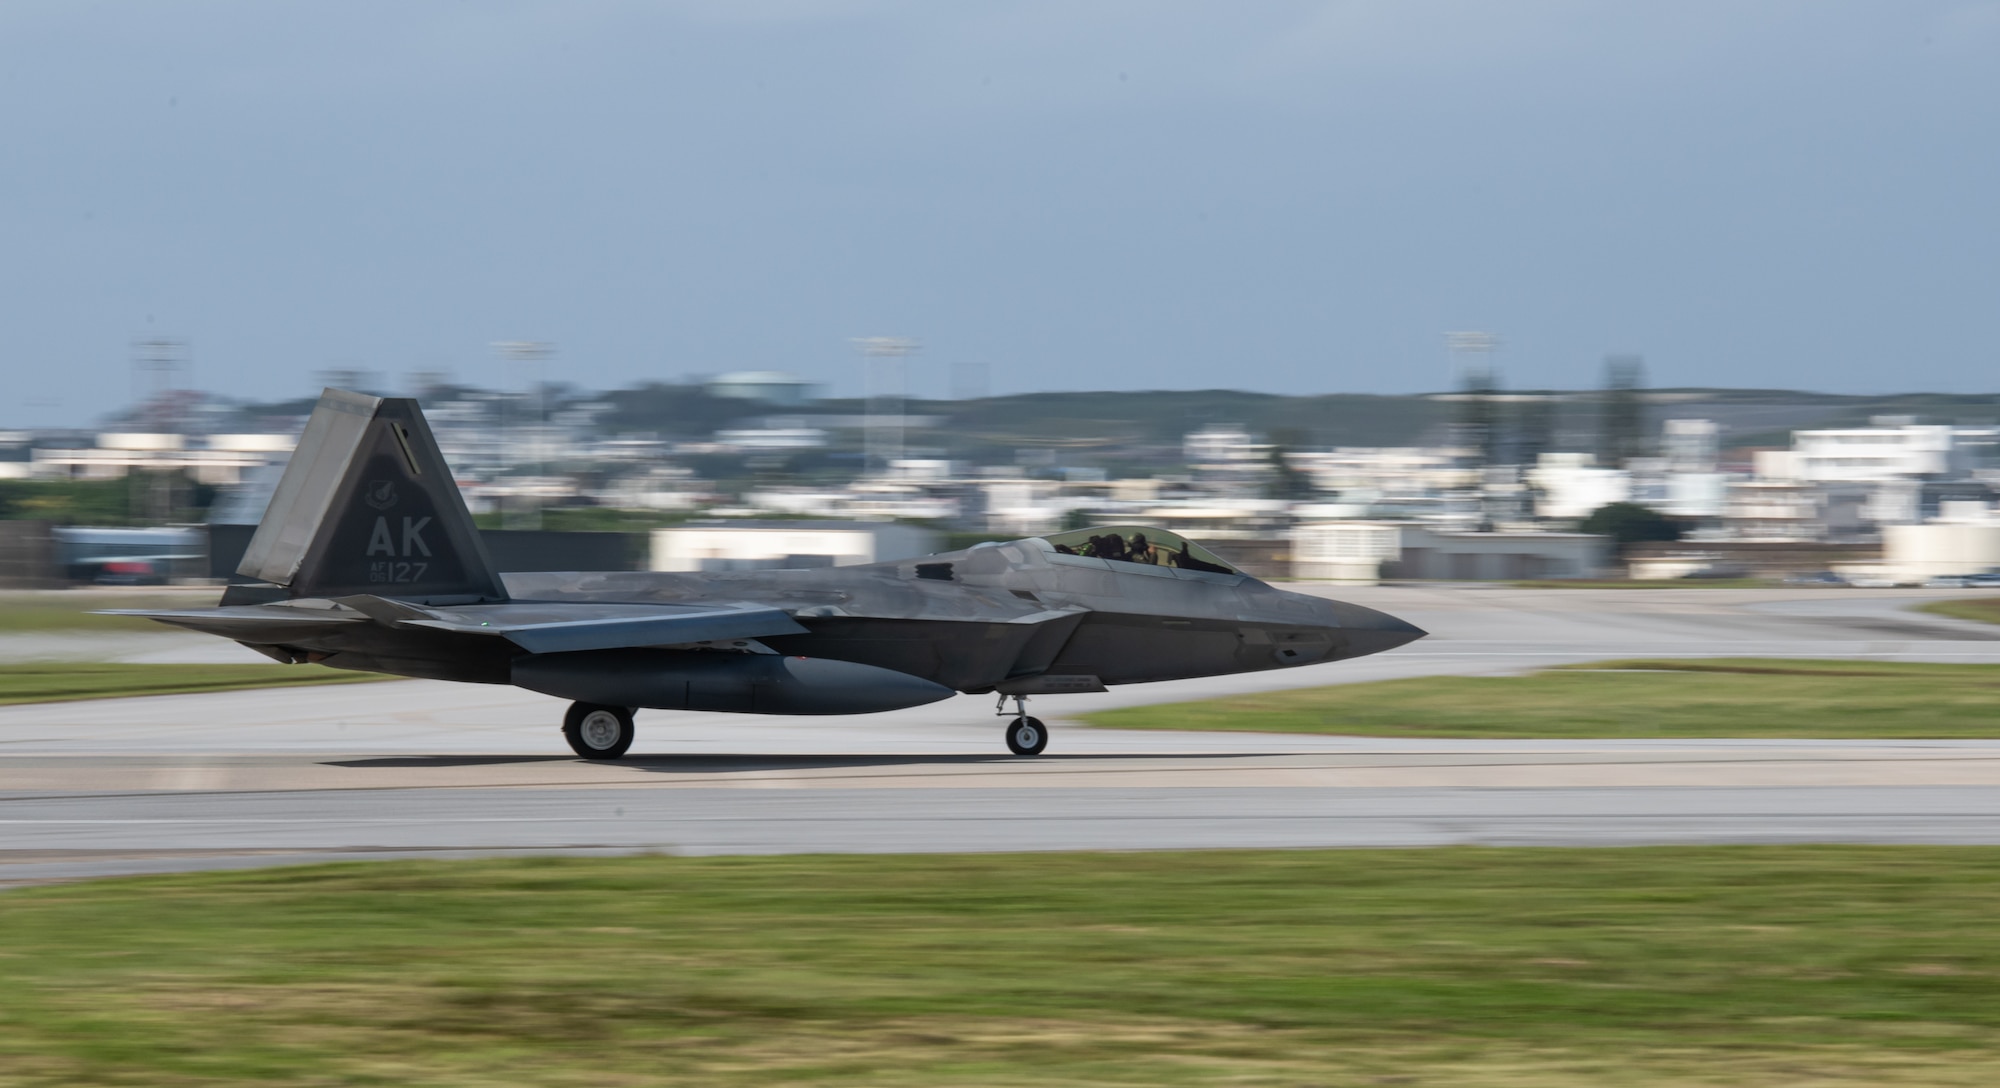 An F-22 Raptor lands on a runway.